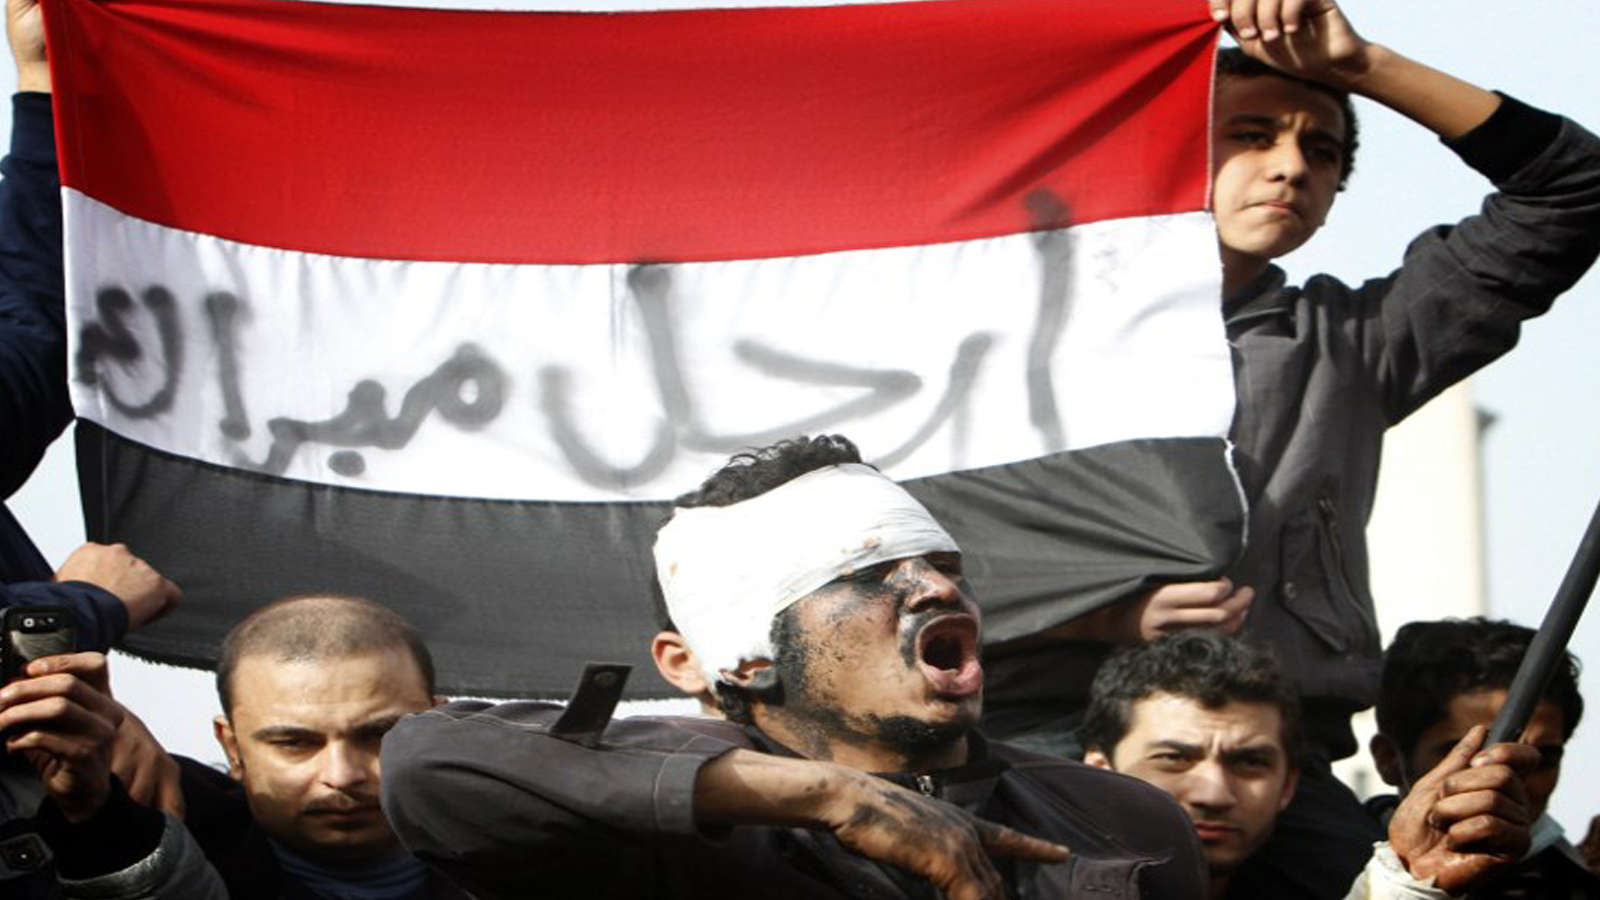 معركة تاريخ الثورة المصرية.. من فعلها؟